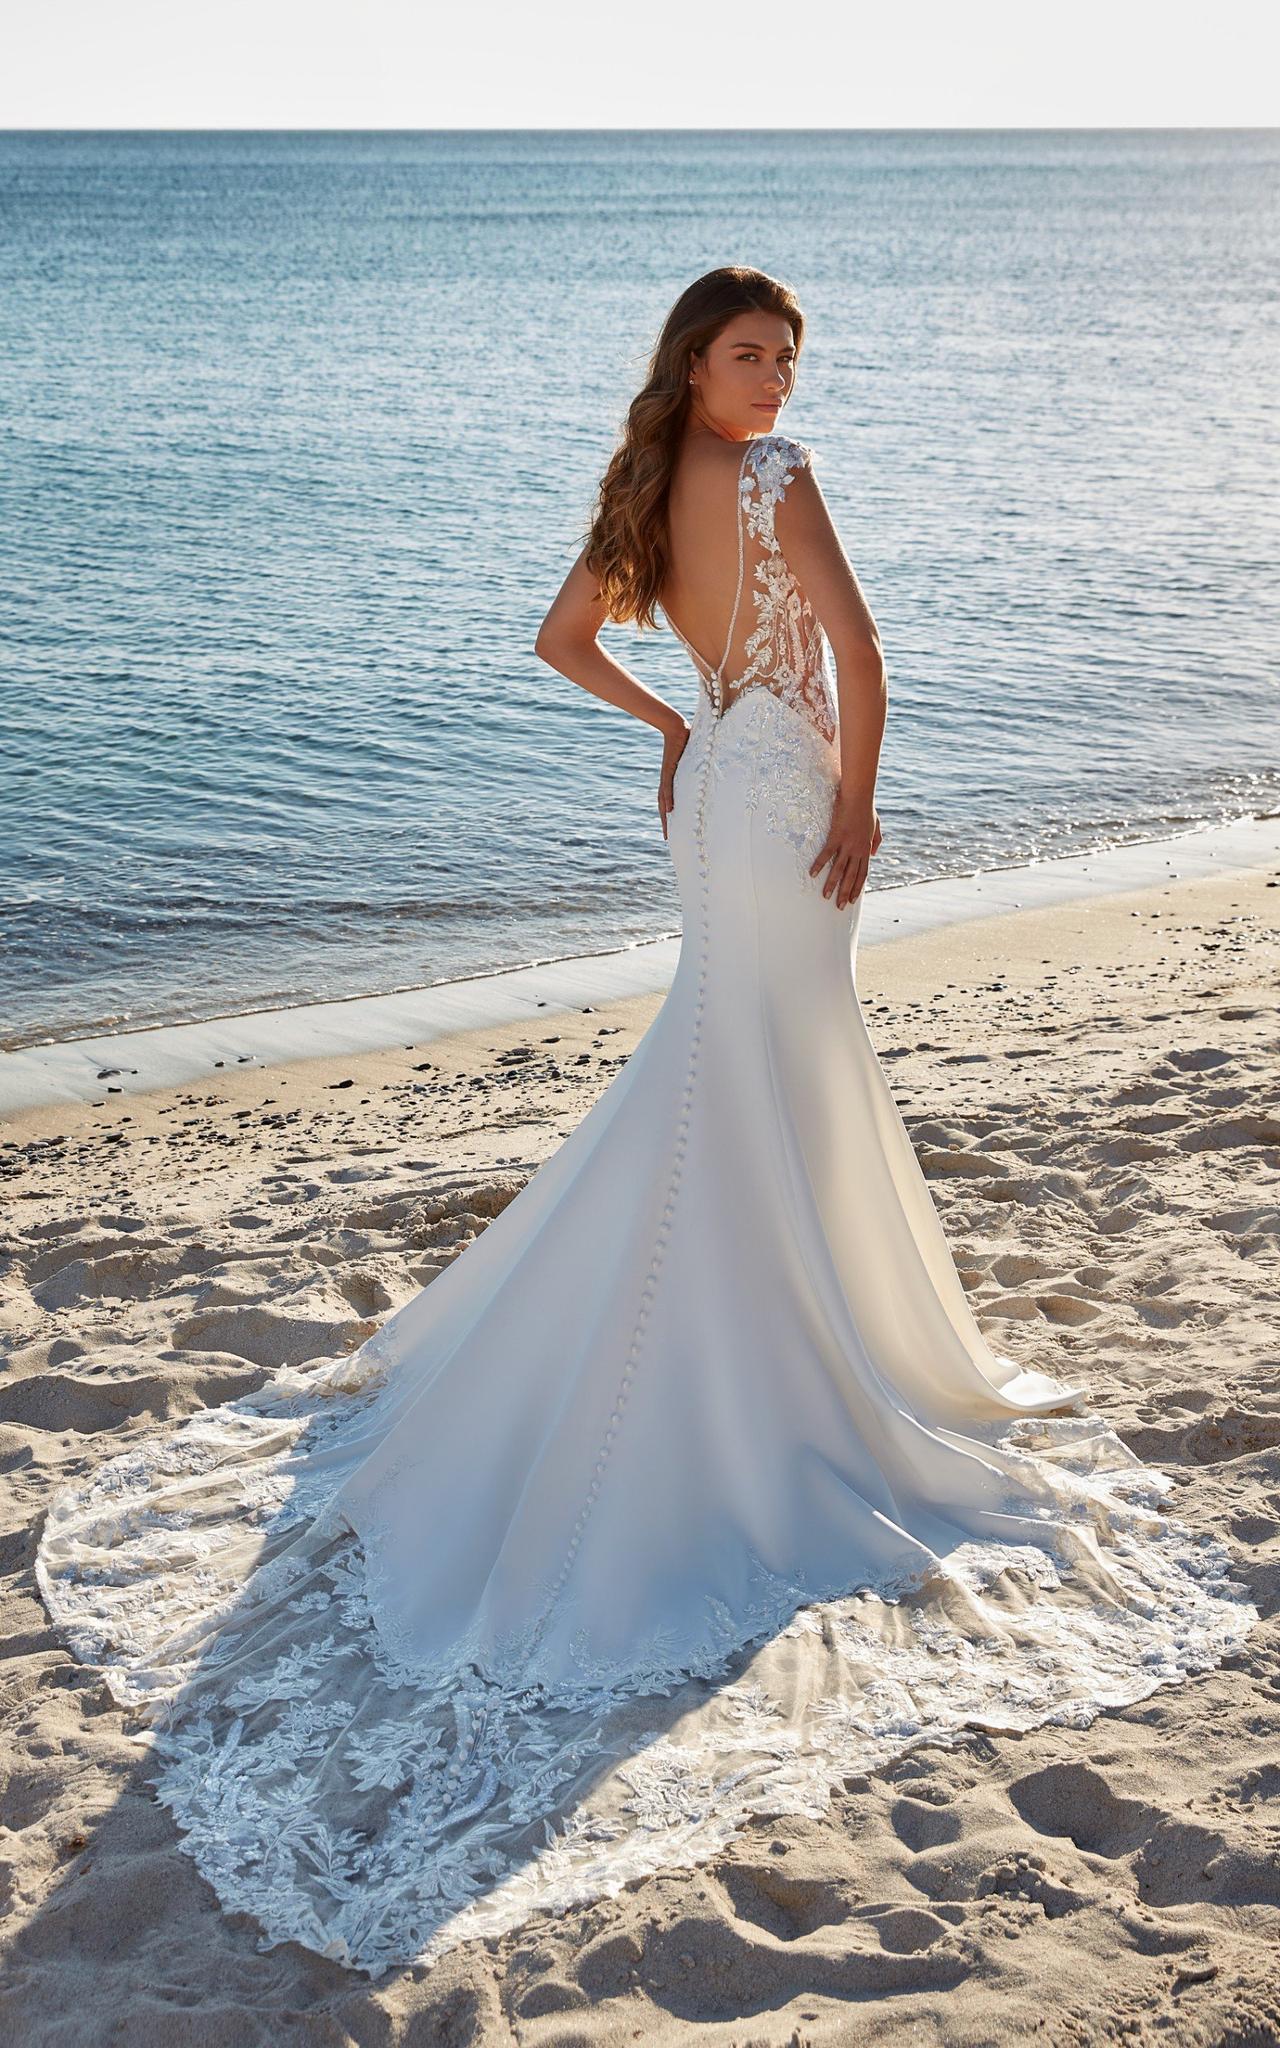 Vestidos de novia para playa: Vaporosidad y frescura